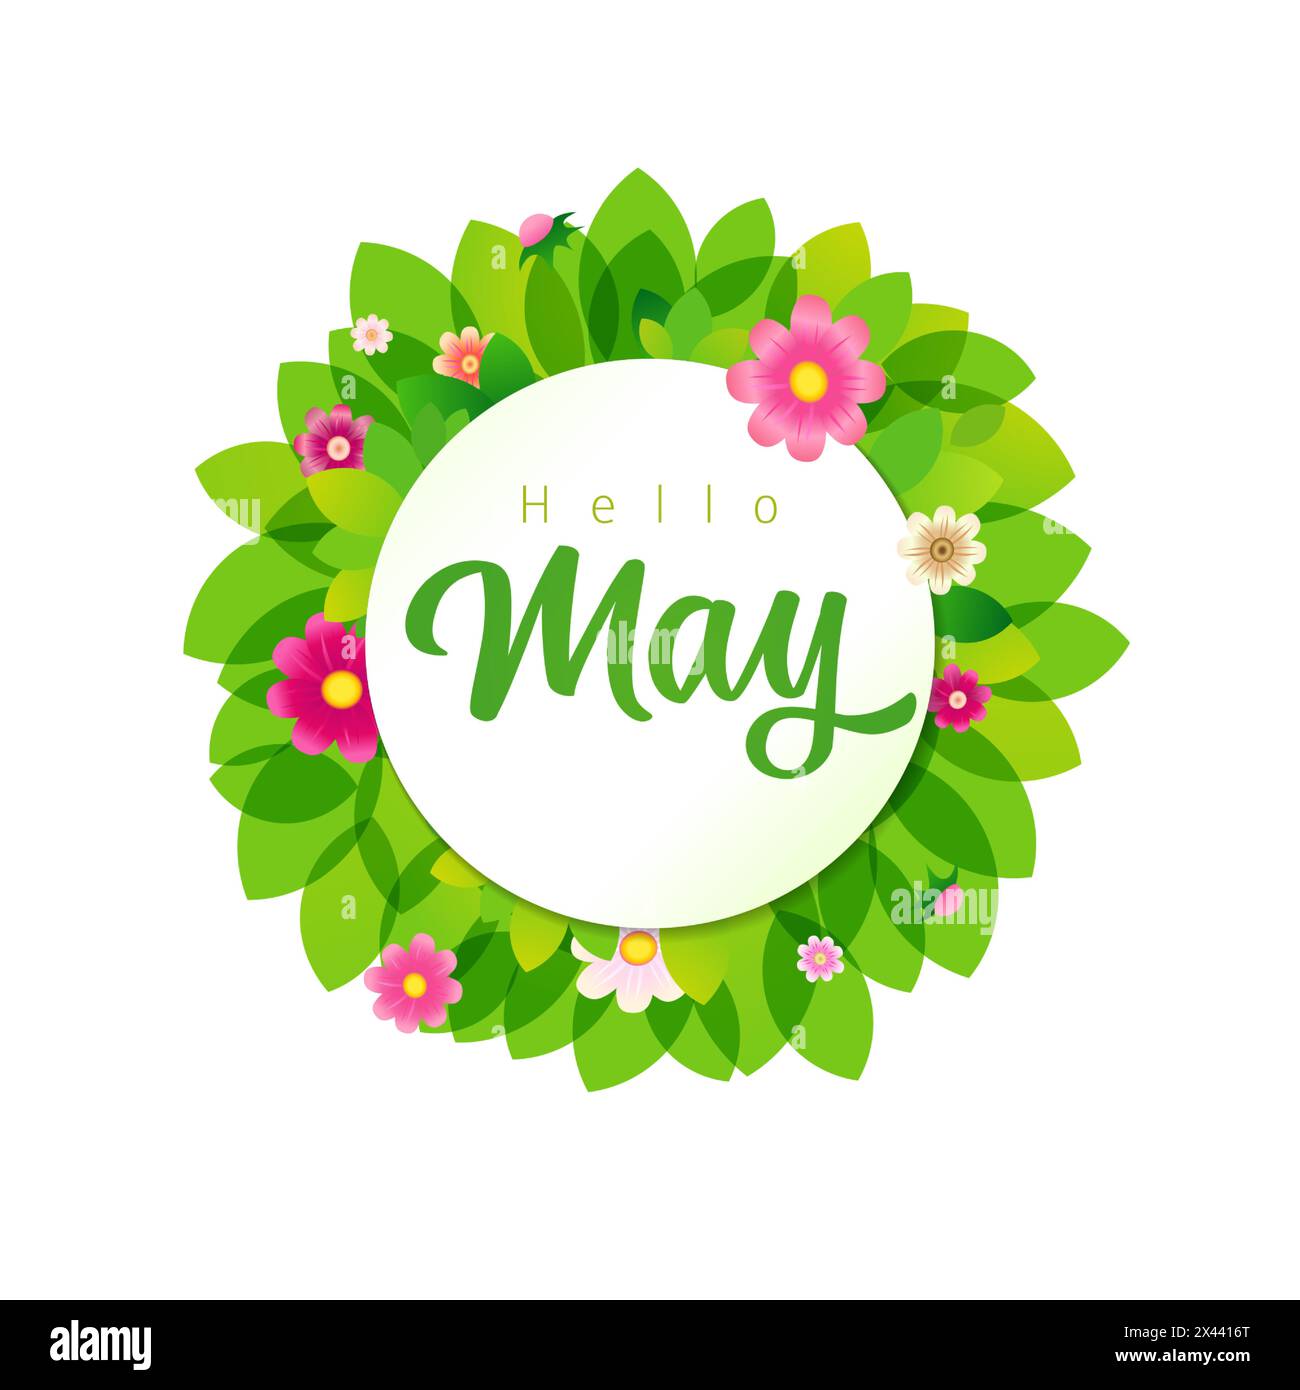 Poster di benvenuto sui social media di maggio. Messaggi di saluto sulla cronologia della rete. Corona verde e fiori rosa. Icona rotonda isolata. Decorazioni astratte primaverili o estive Illustrazione Vettoriale